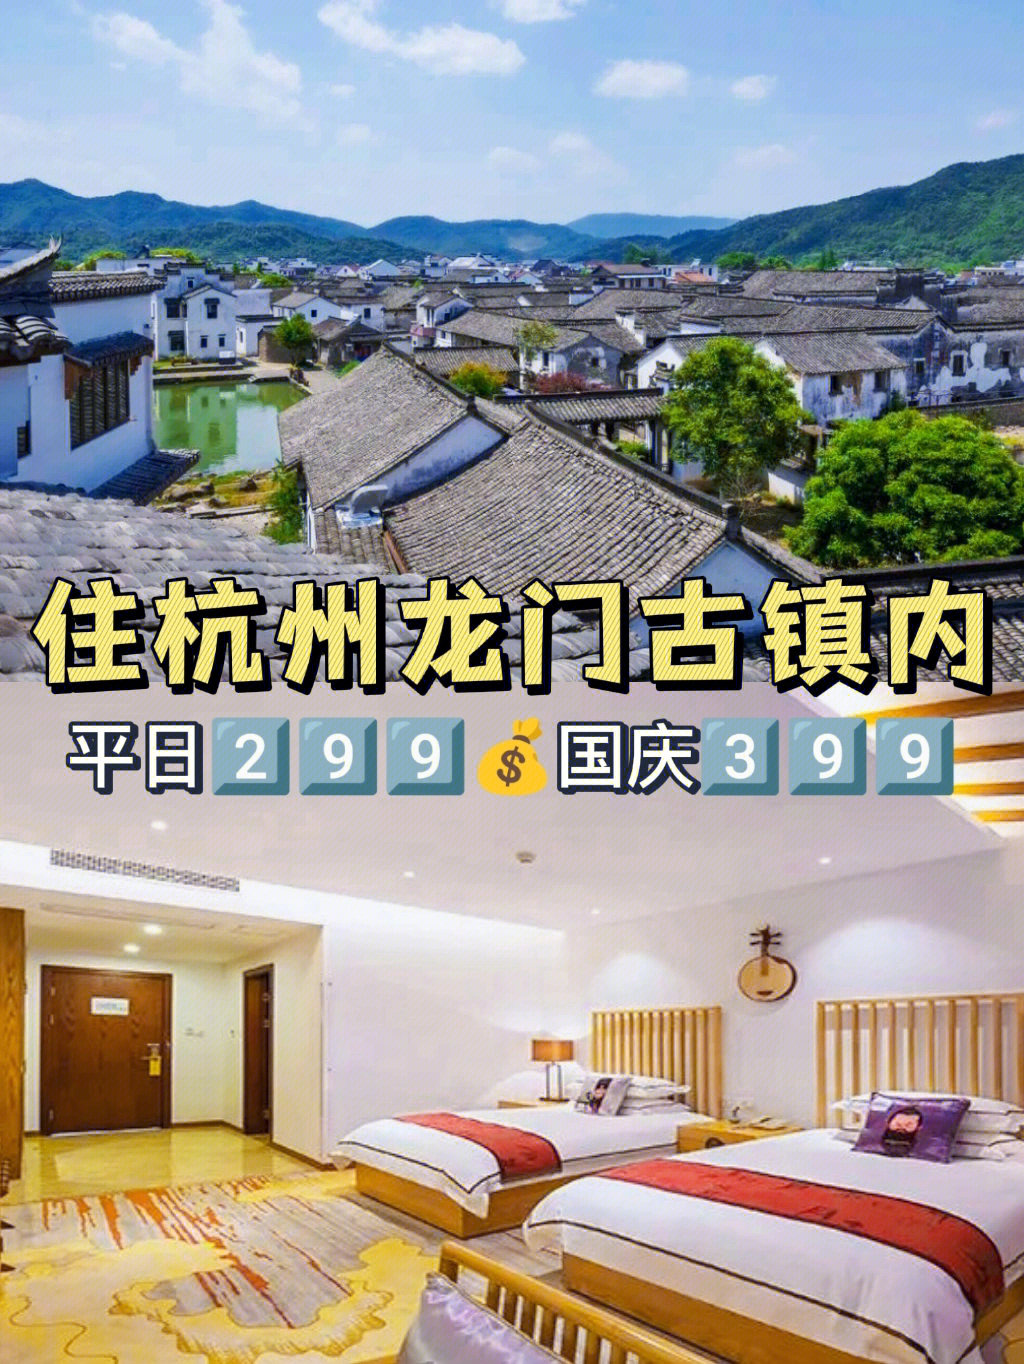 15古镇里唯yi具有东吴文化特色的酒店·96